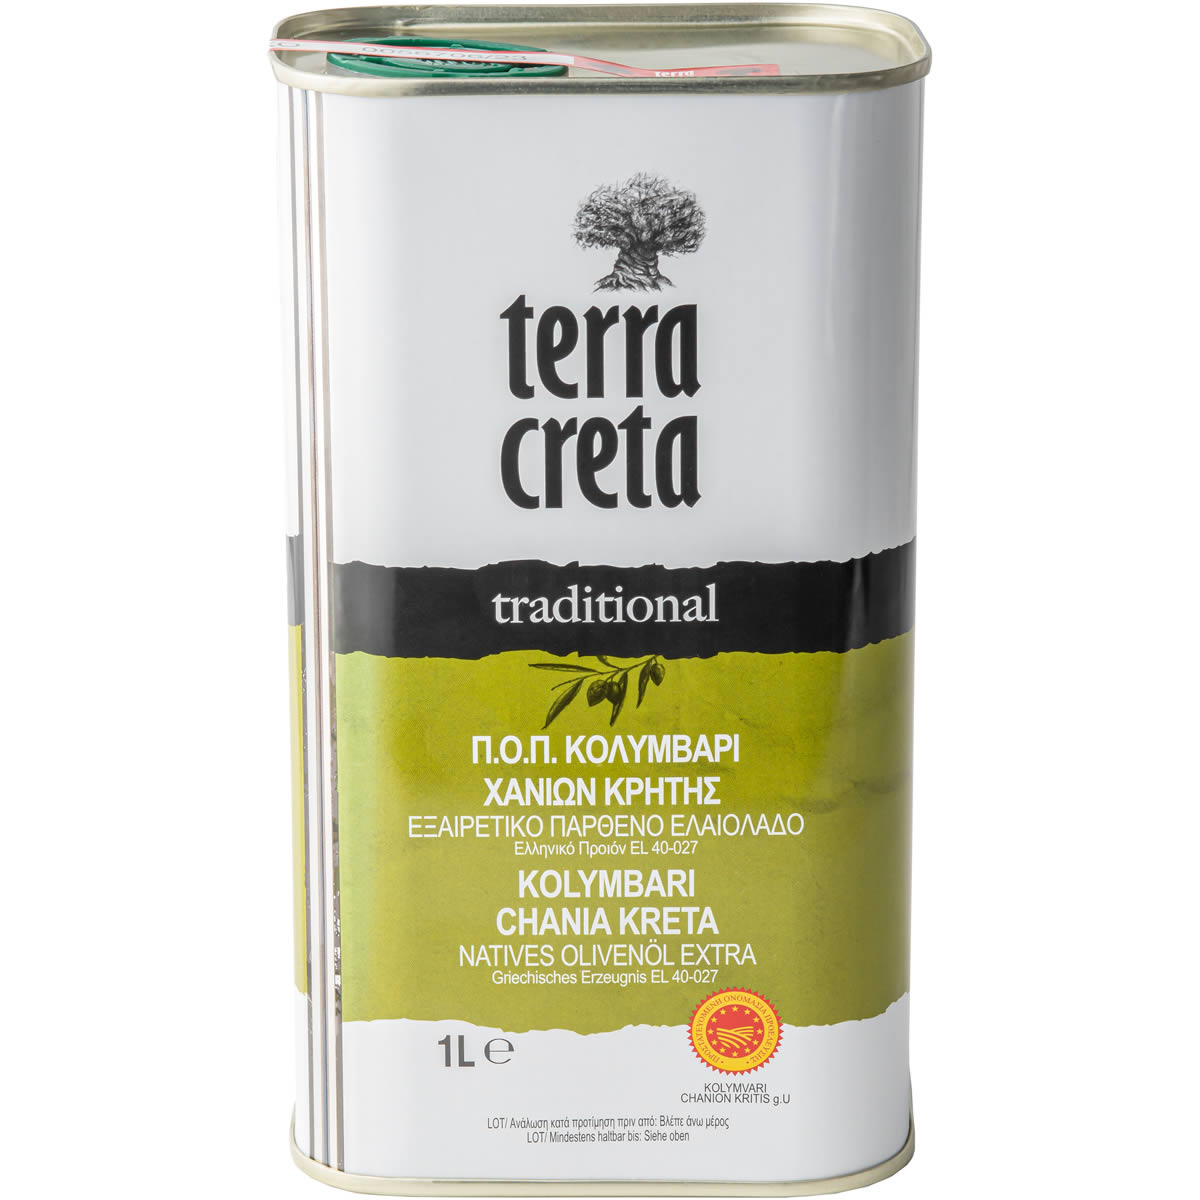 Terra Creta - Extra natives Olivenöl "traditional" g.U. 1 l (Kanister)